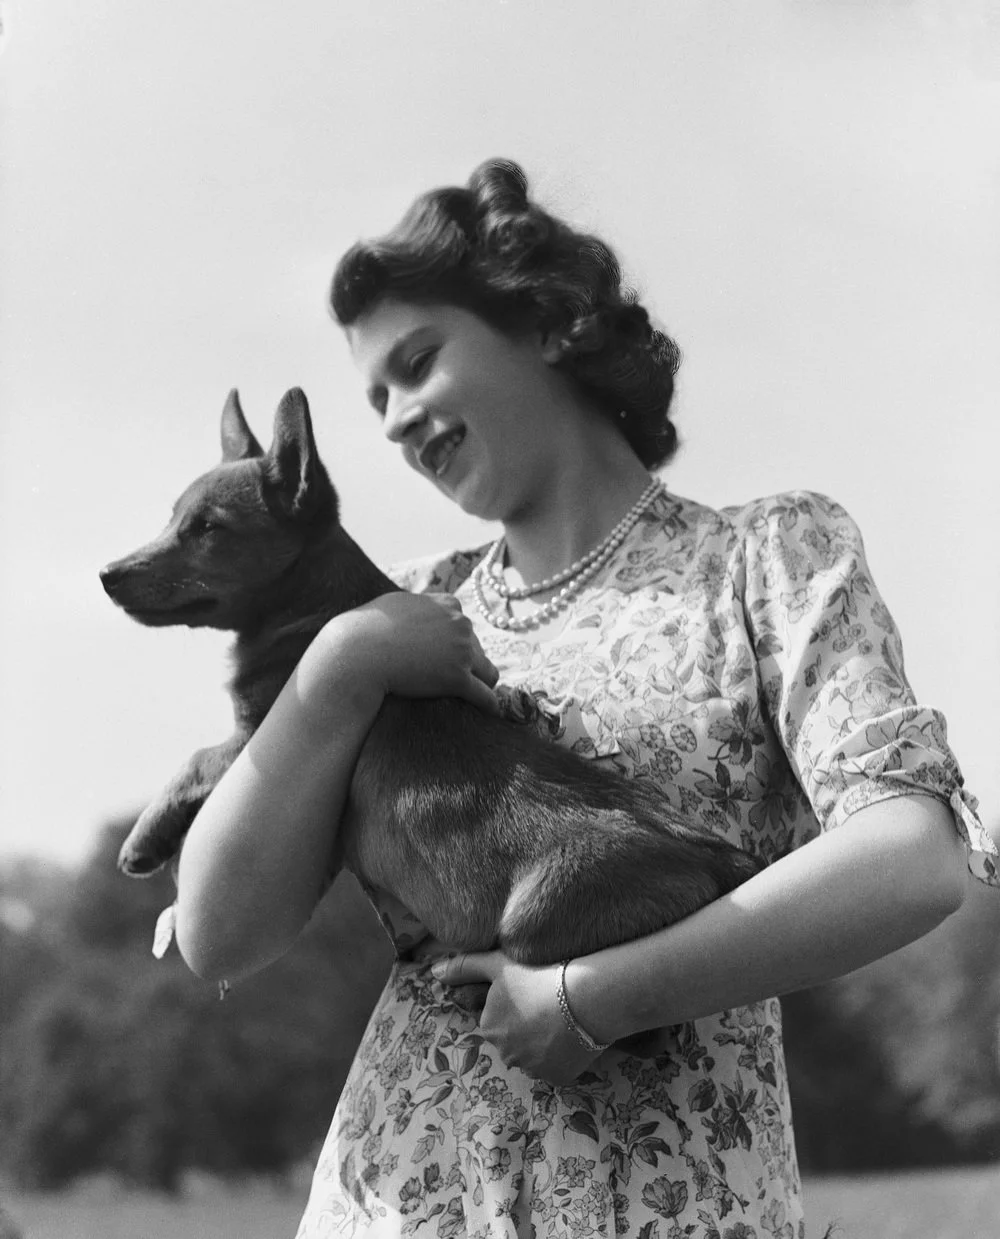 1944年5月30日，英国温莎，伊丽莎白公主抱着爱犬Susan，这是她的18岁生日礼物，从此与柯基结下了不解之缘。女王一生养过30多只柯基，视其为王室成员一份子。在多年的陪伴中，柯基近乎是女王和皇室的象征，深受大家欢迎。